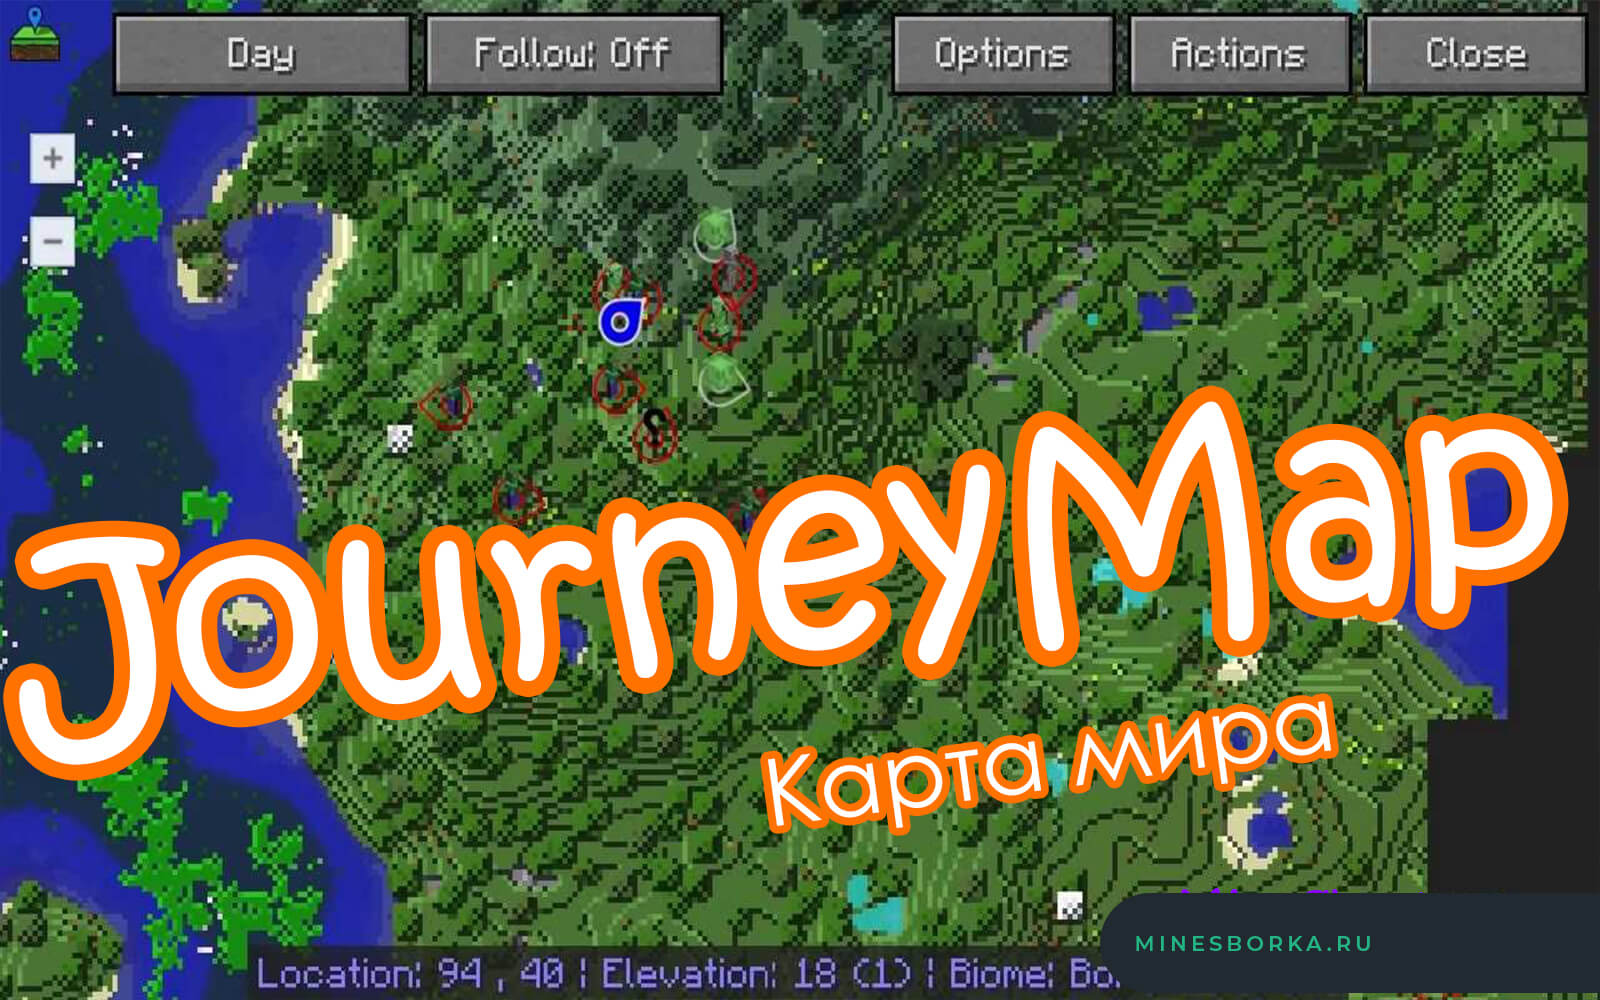 Скачать мод JourneyMap для майнкрафт | Классная карта мира